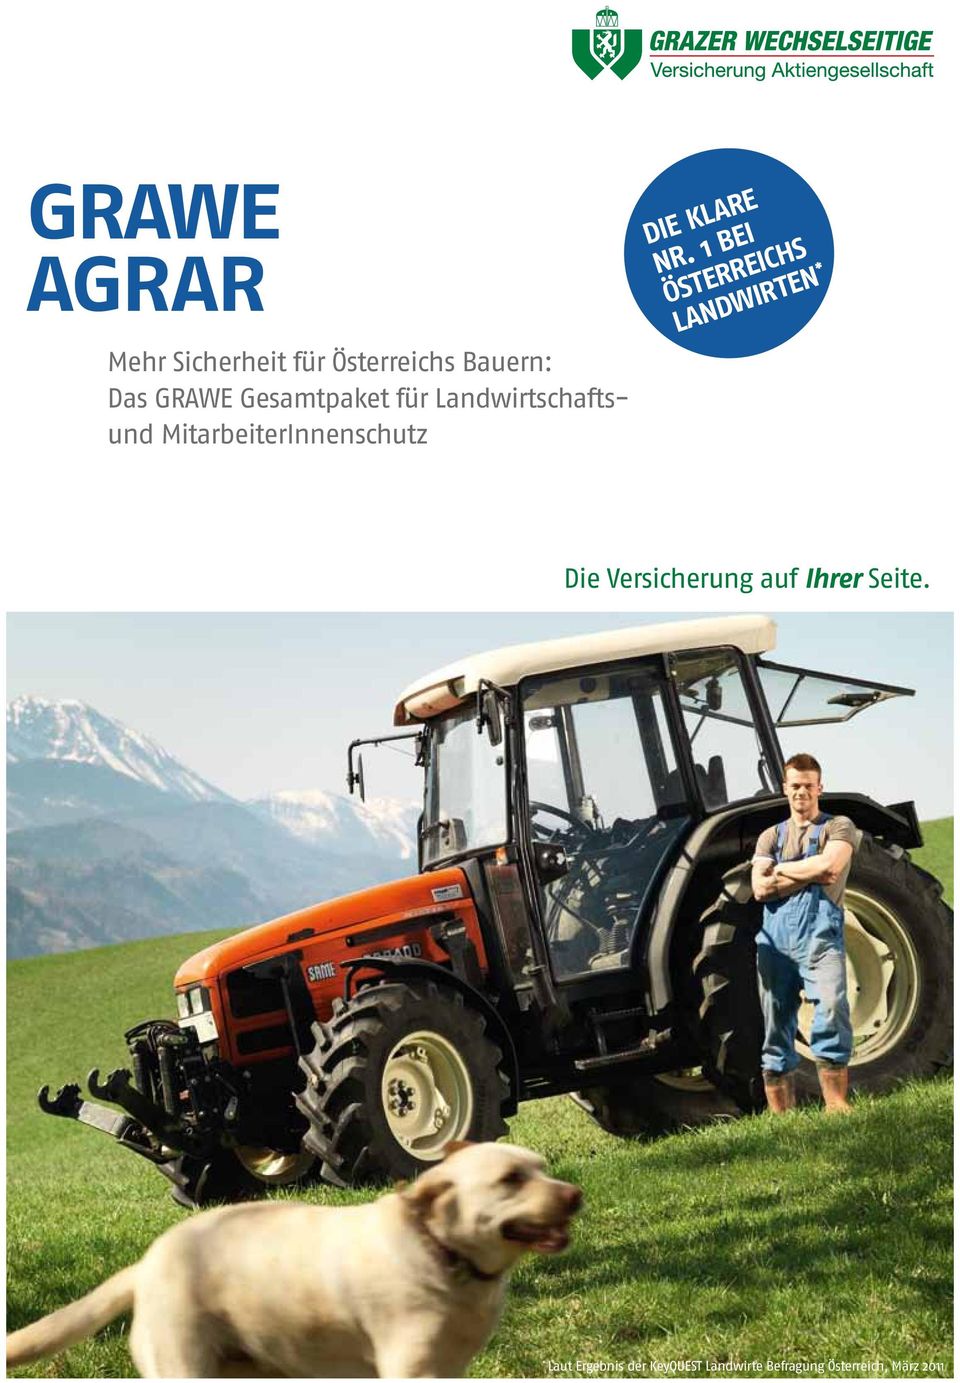 NR. 1 Bei Österreichs LandwirteN * Die Versicherung auf Ihrer Seite.